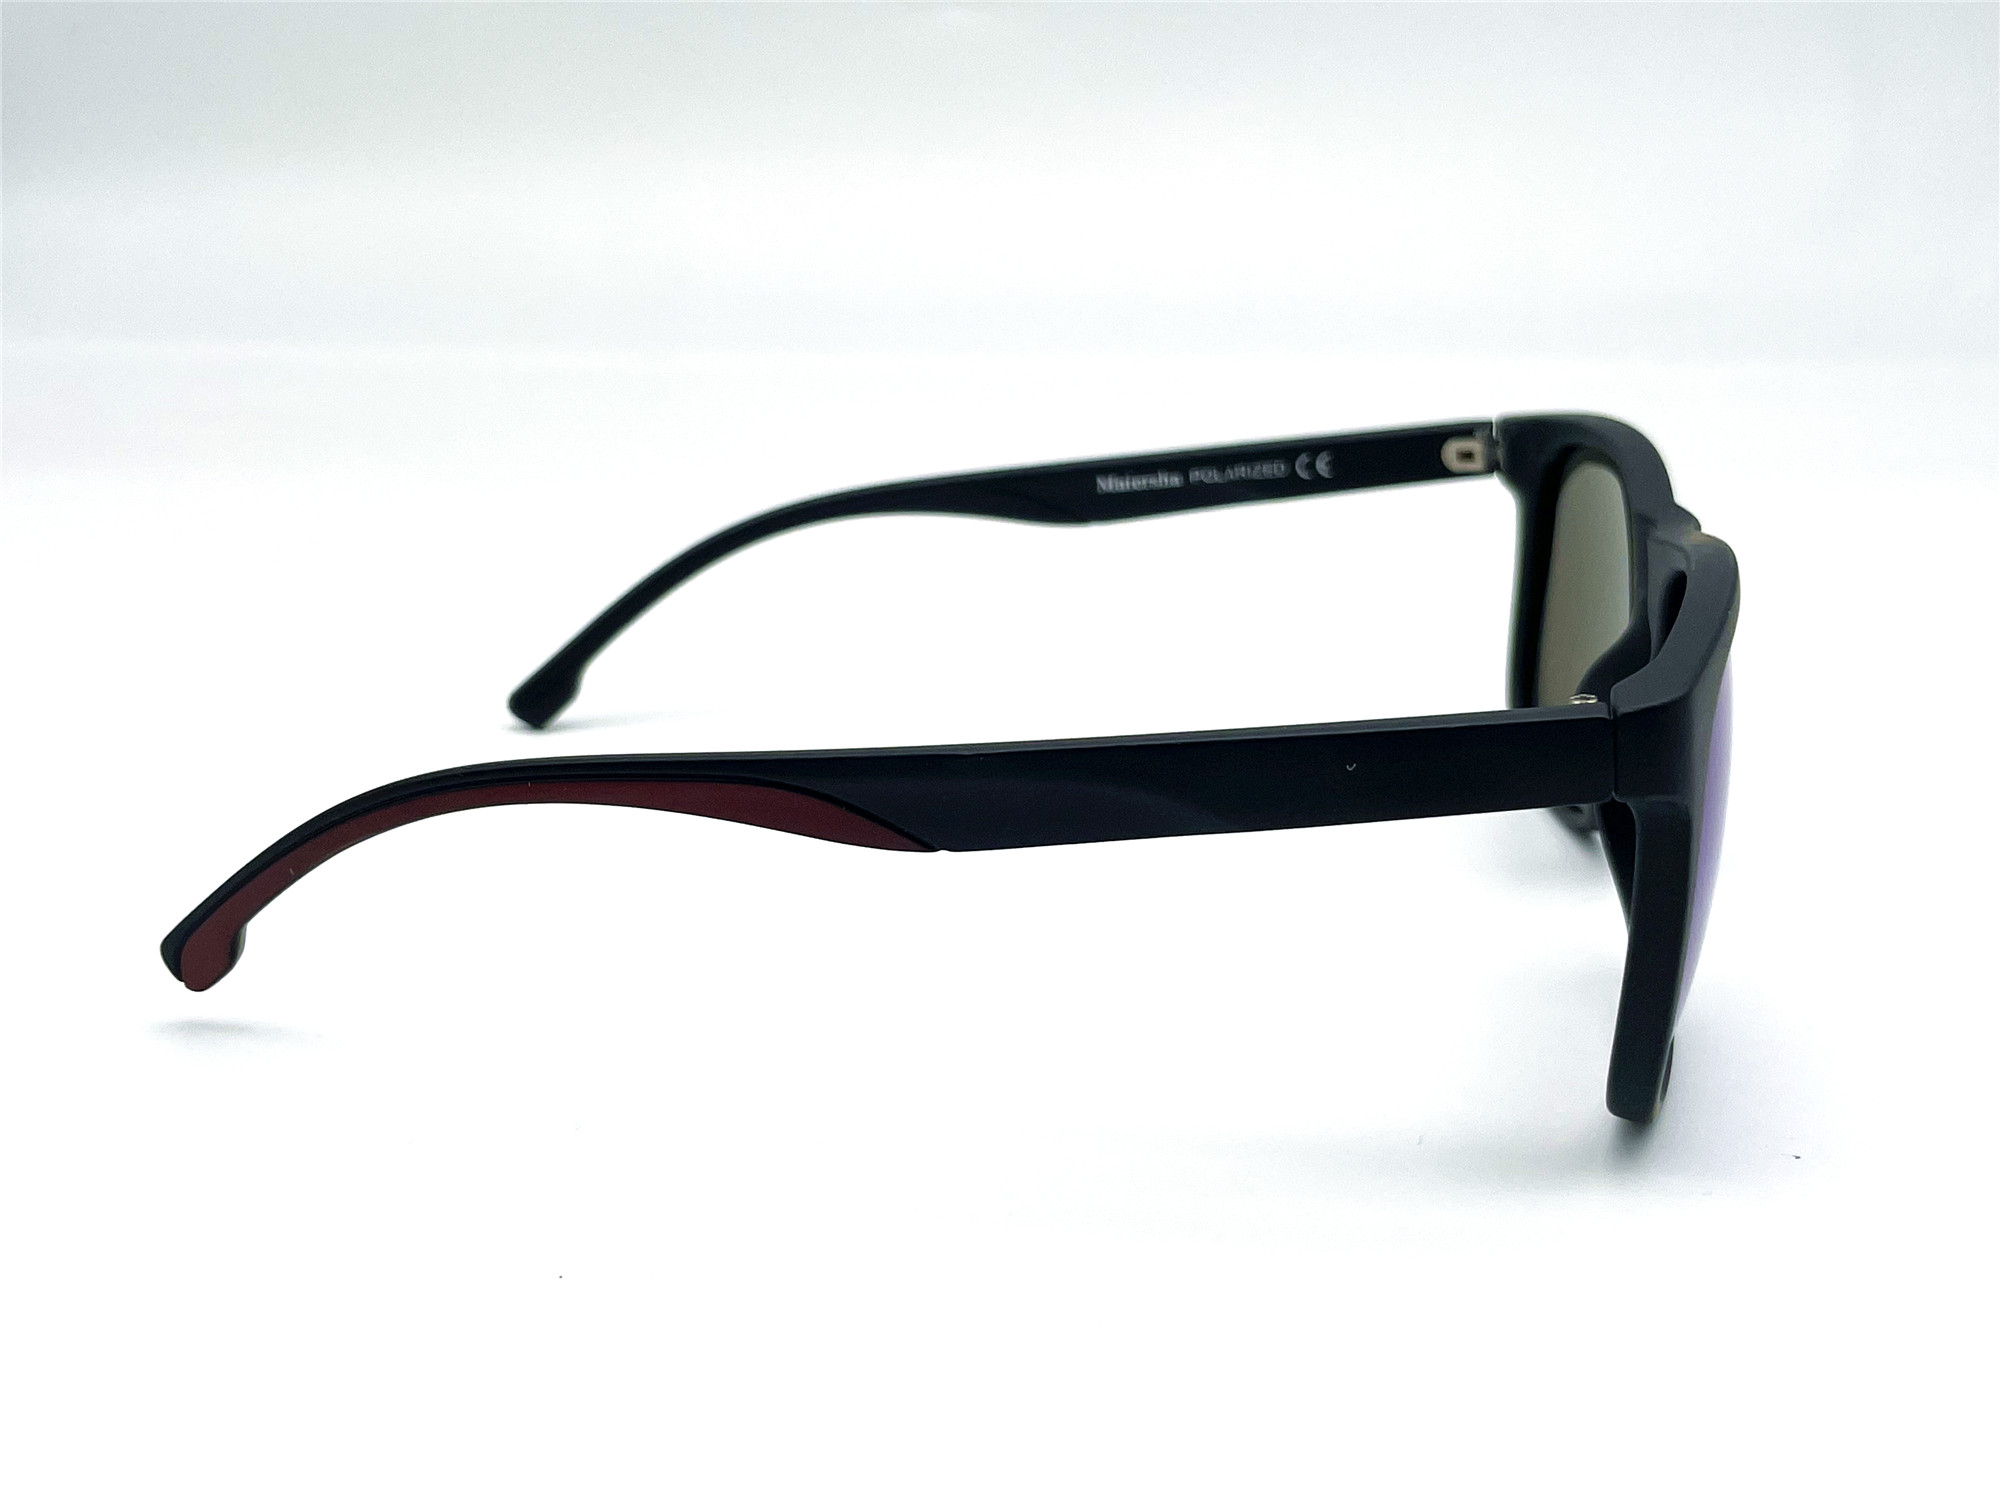  Солнцезащитные очки картинка Мужские Maiersha Polarized Стандартные P5056-C5 